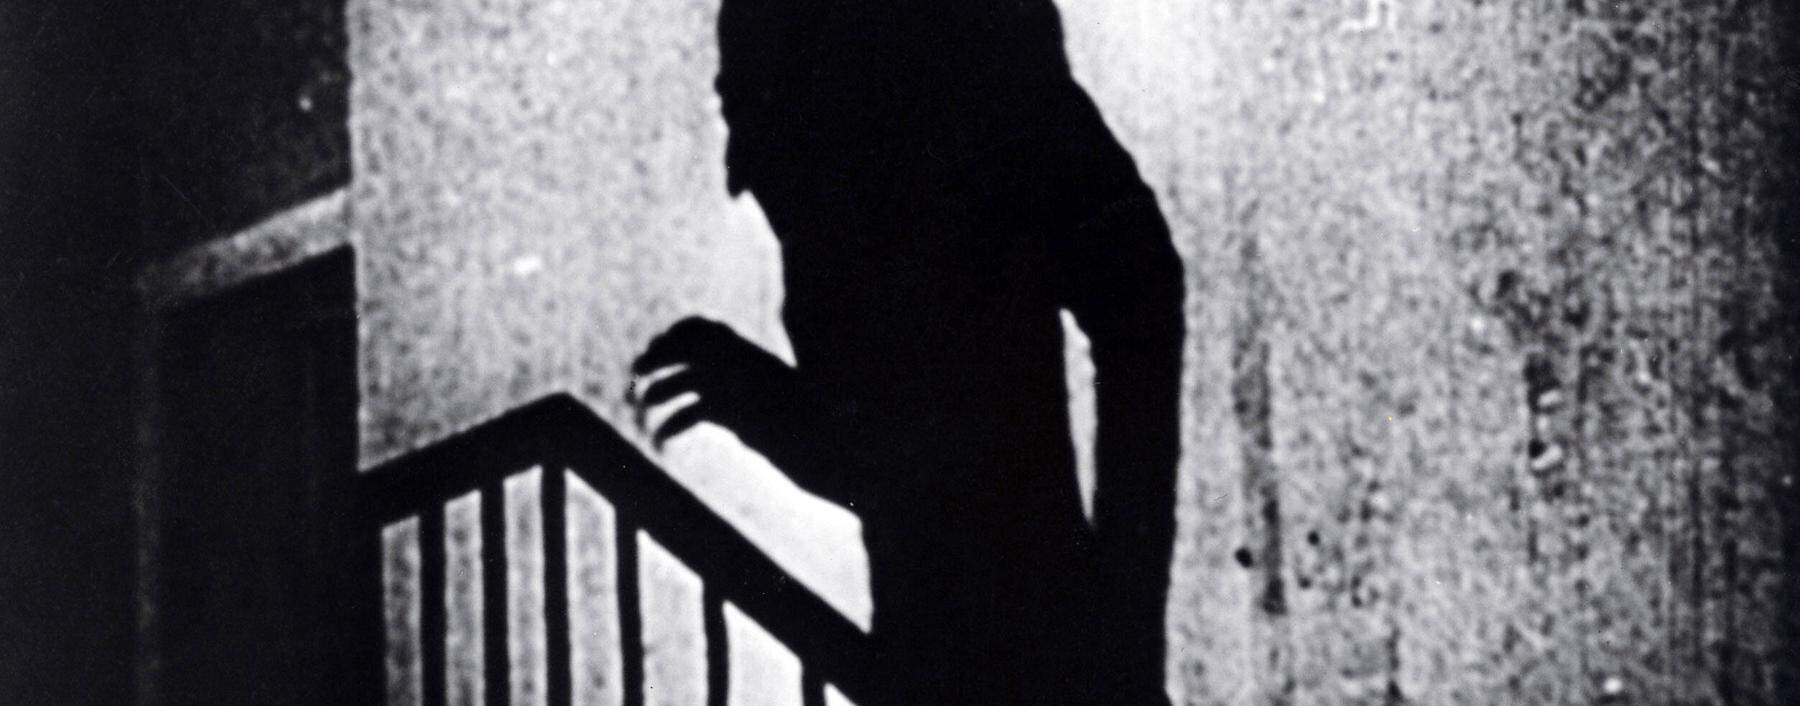 Murnaus Film „Nosferatu – Eine Symphonie des Grauens“ von 1922 prägte die Ästhetik des monströsen Vampirs mit.